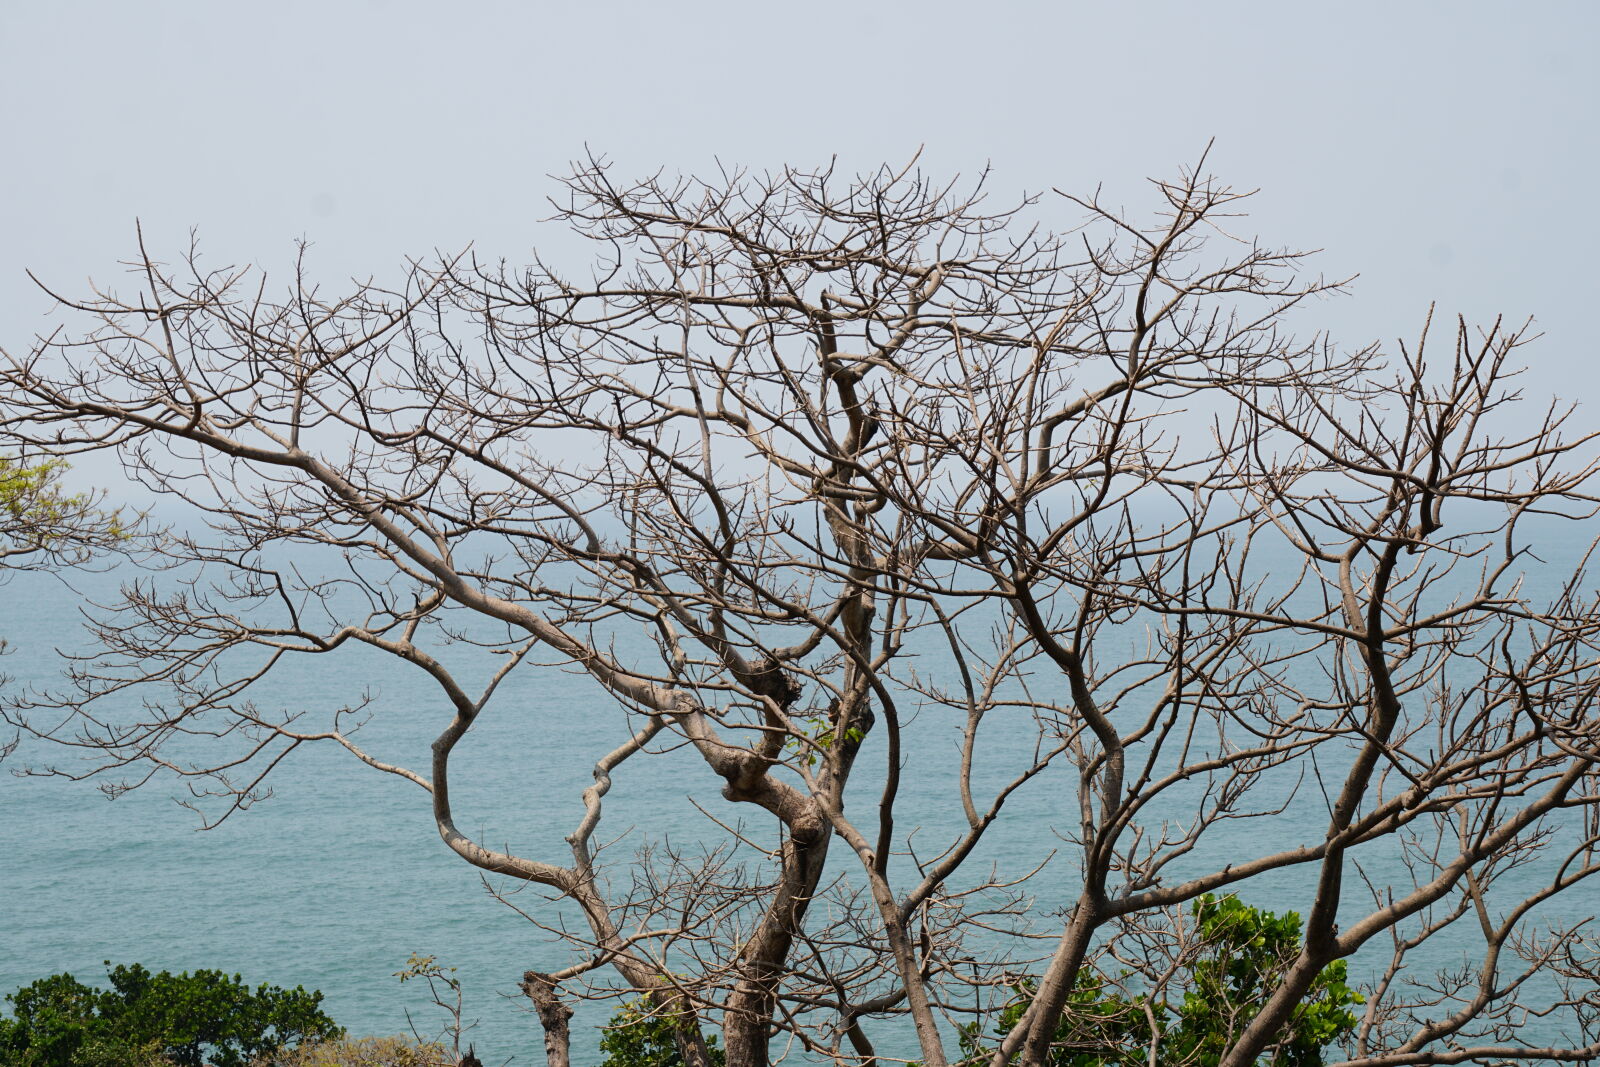 Sony E 55-210mm F4.5-6.3 OSS sample photo. Beautiful, coconut, trees, natue photography